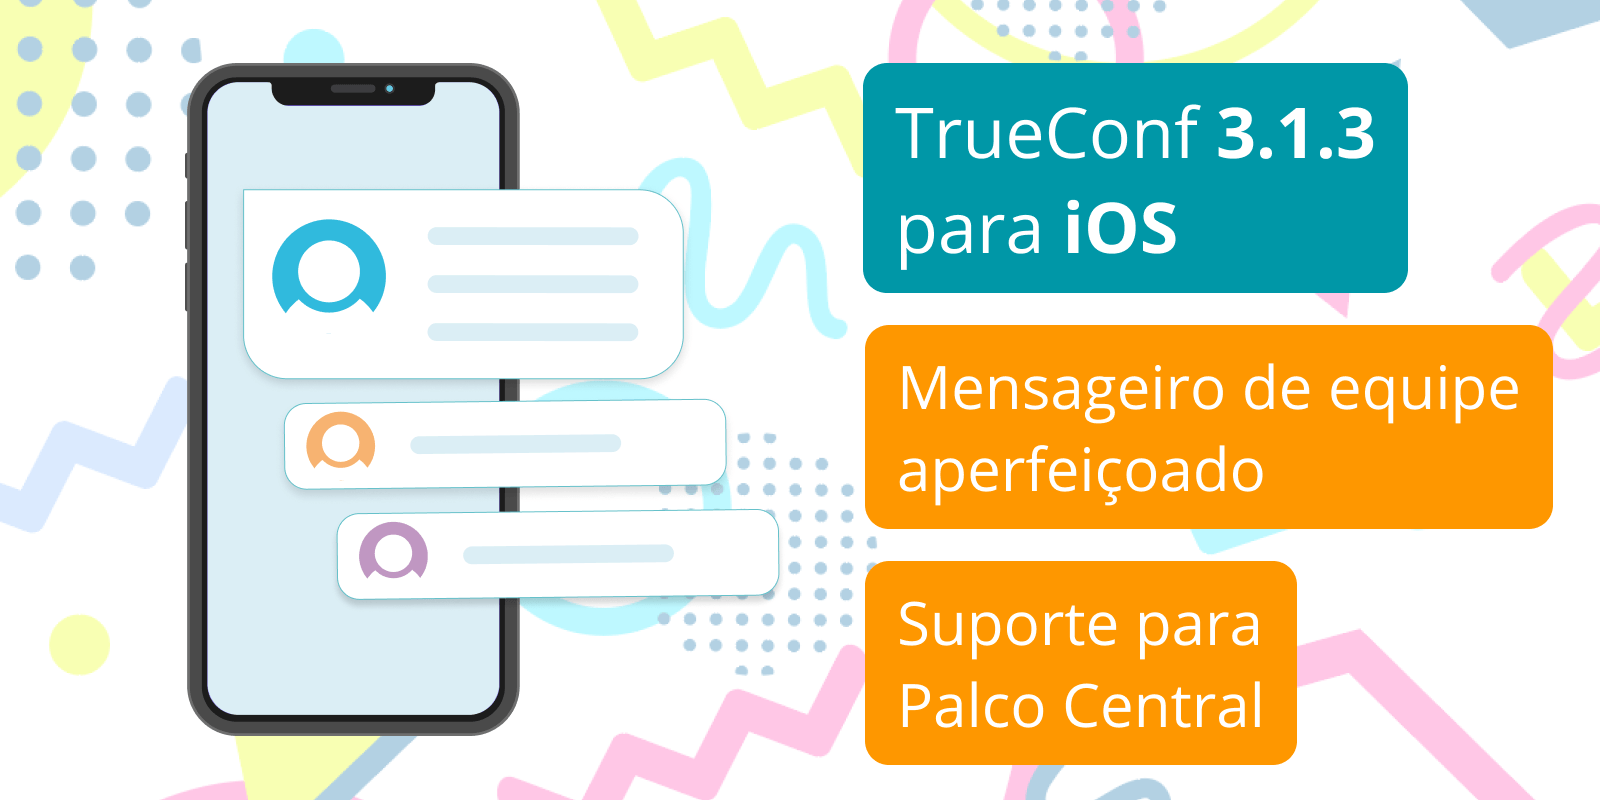 TrueConf 3.1.3 para iOS: mensagens de equipe aprimoradas e suporte de Palco Central 3